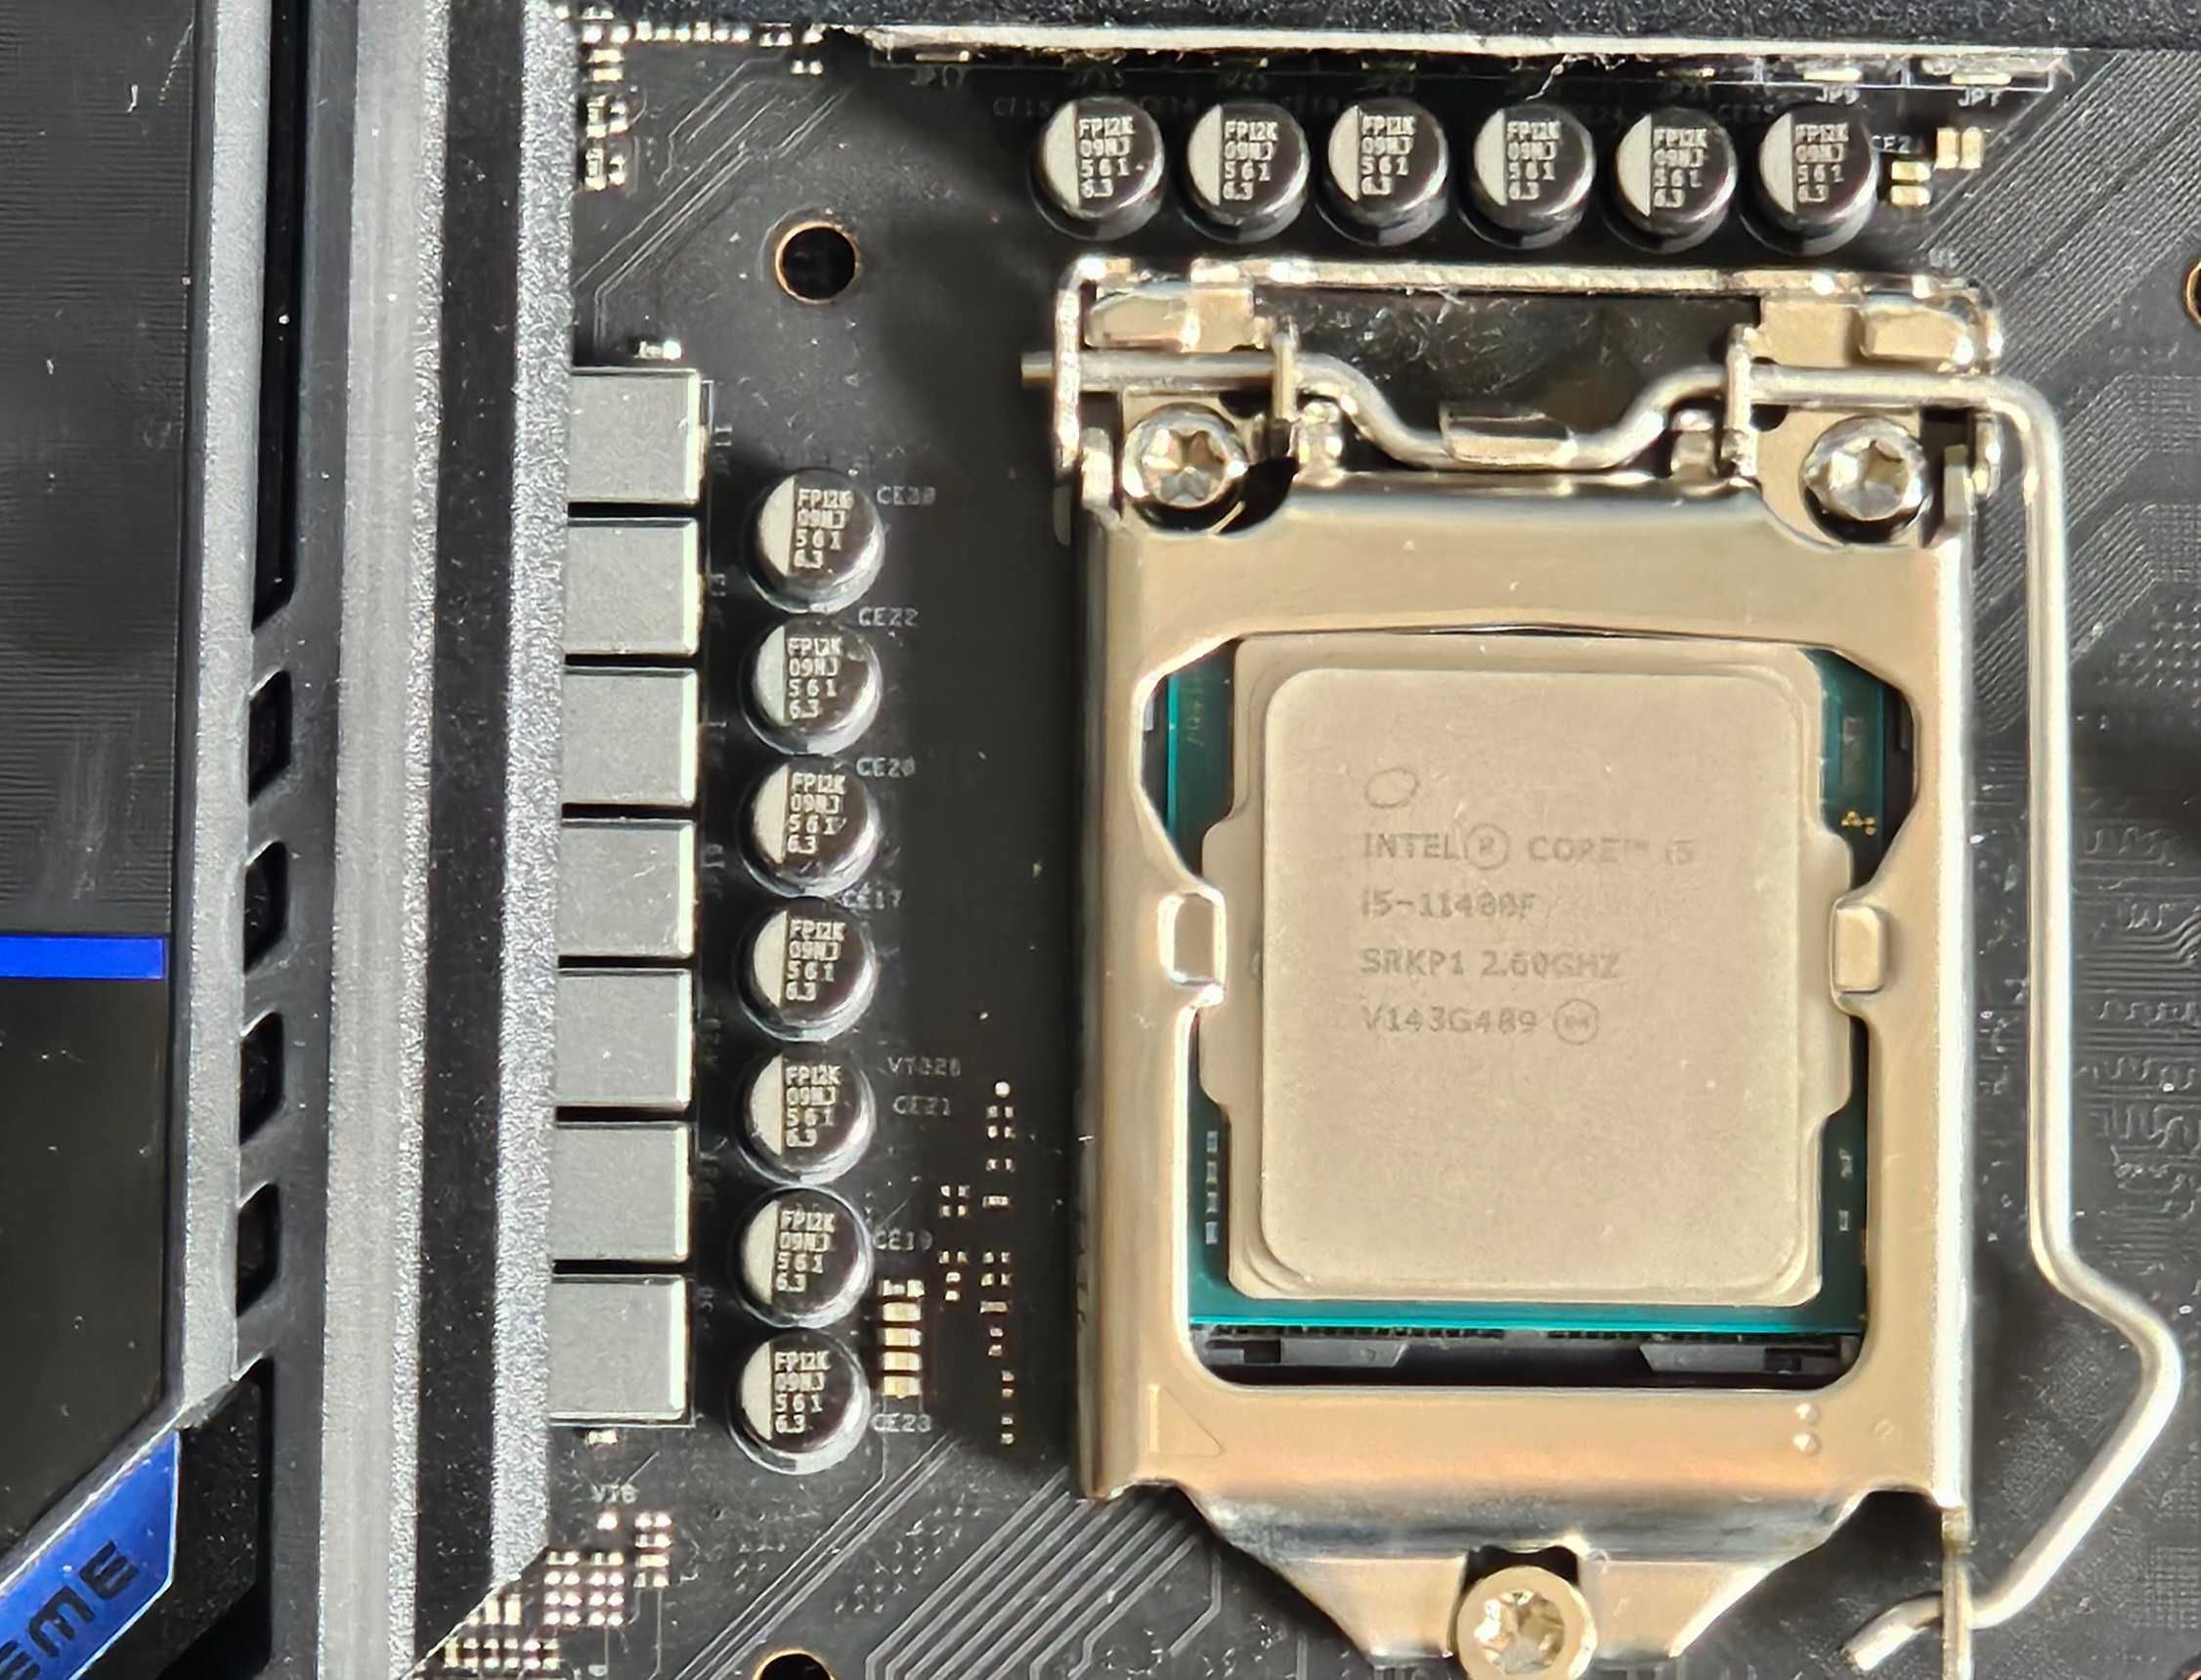 Procesor Intel i5-11400f, Asrock Z590 Extreme,  3 dyski SSD m2 NvMe